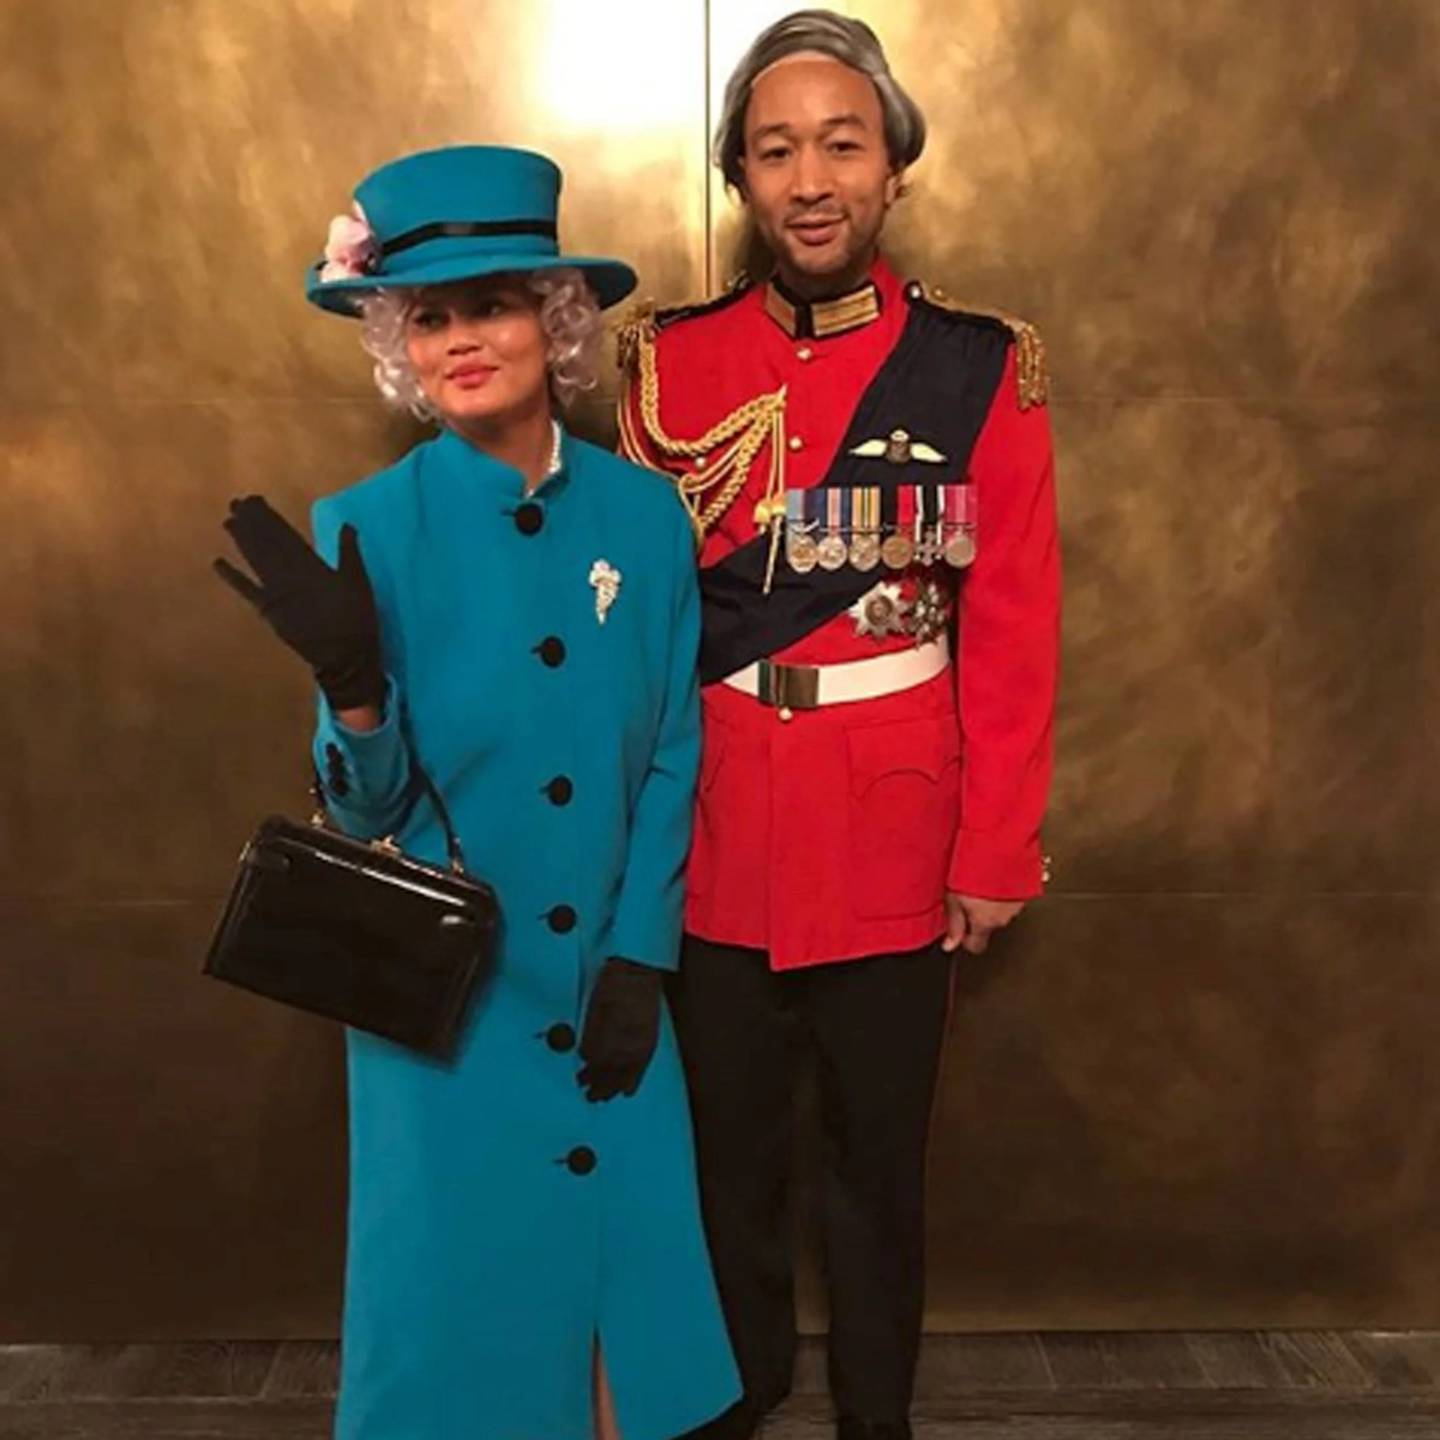 Chrissy Teigen demostró sde disfrazó de la Reina Isabel I de Inglaterra en Halloween 2018